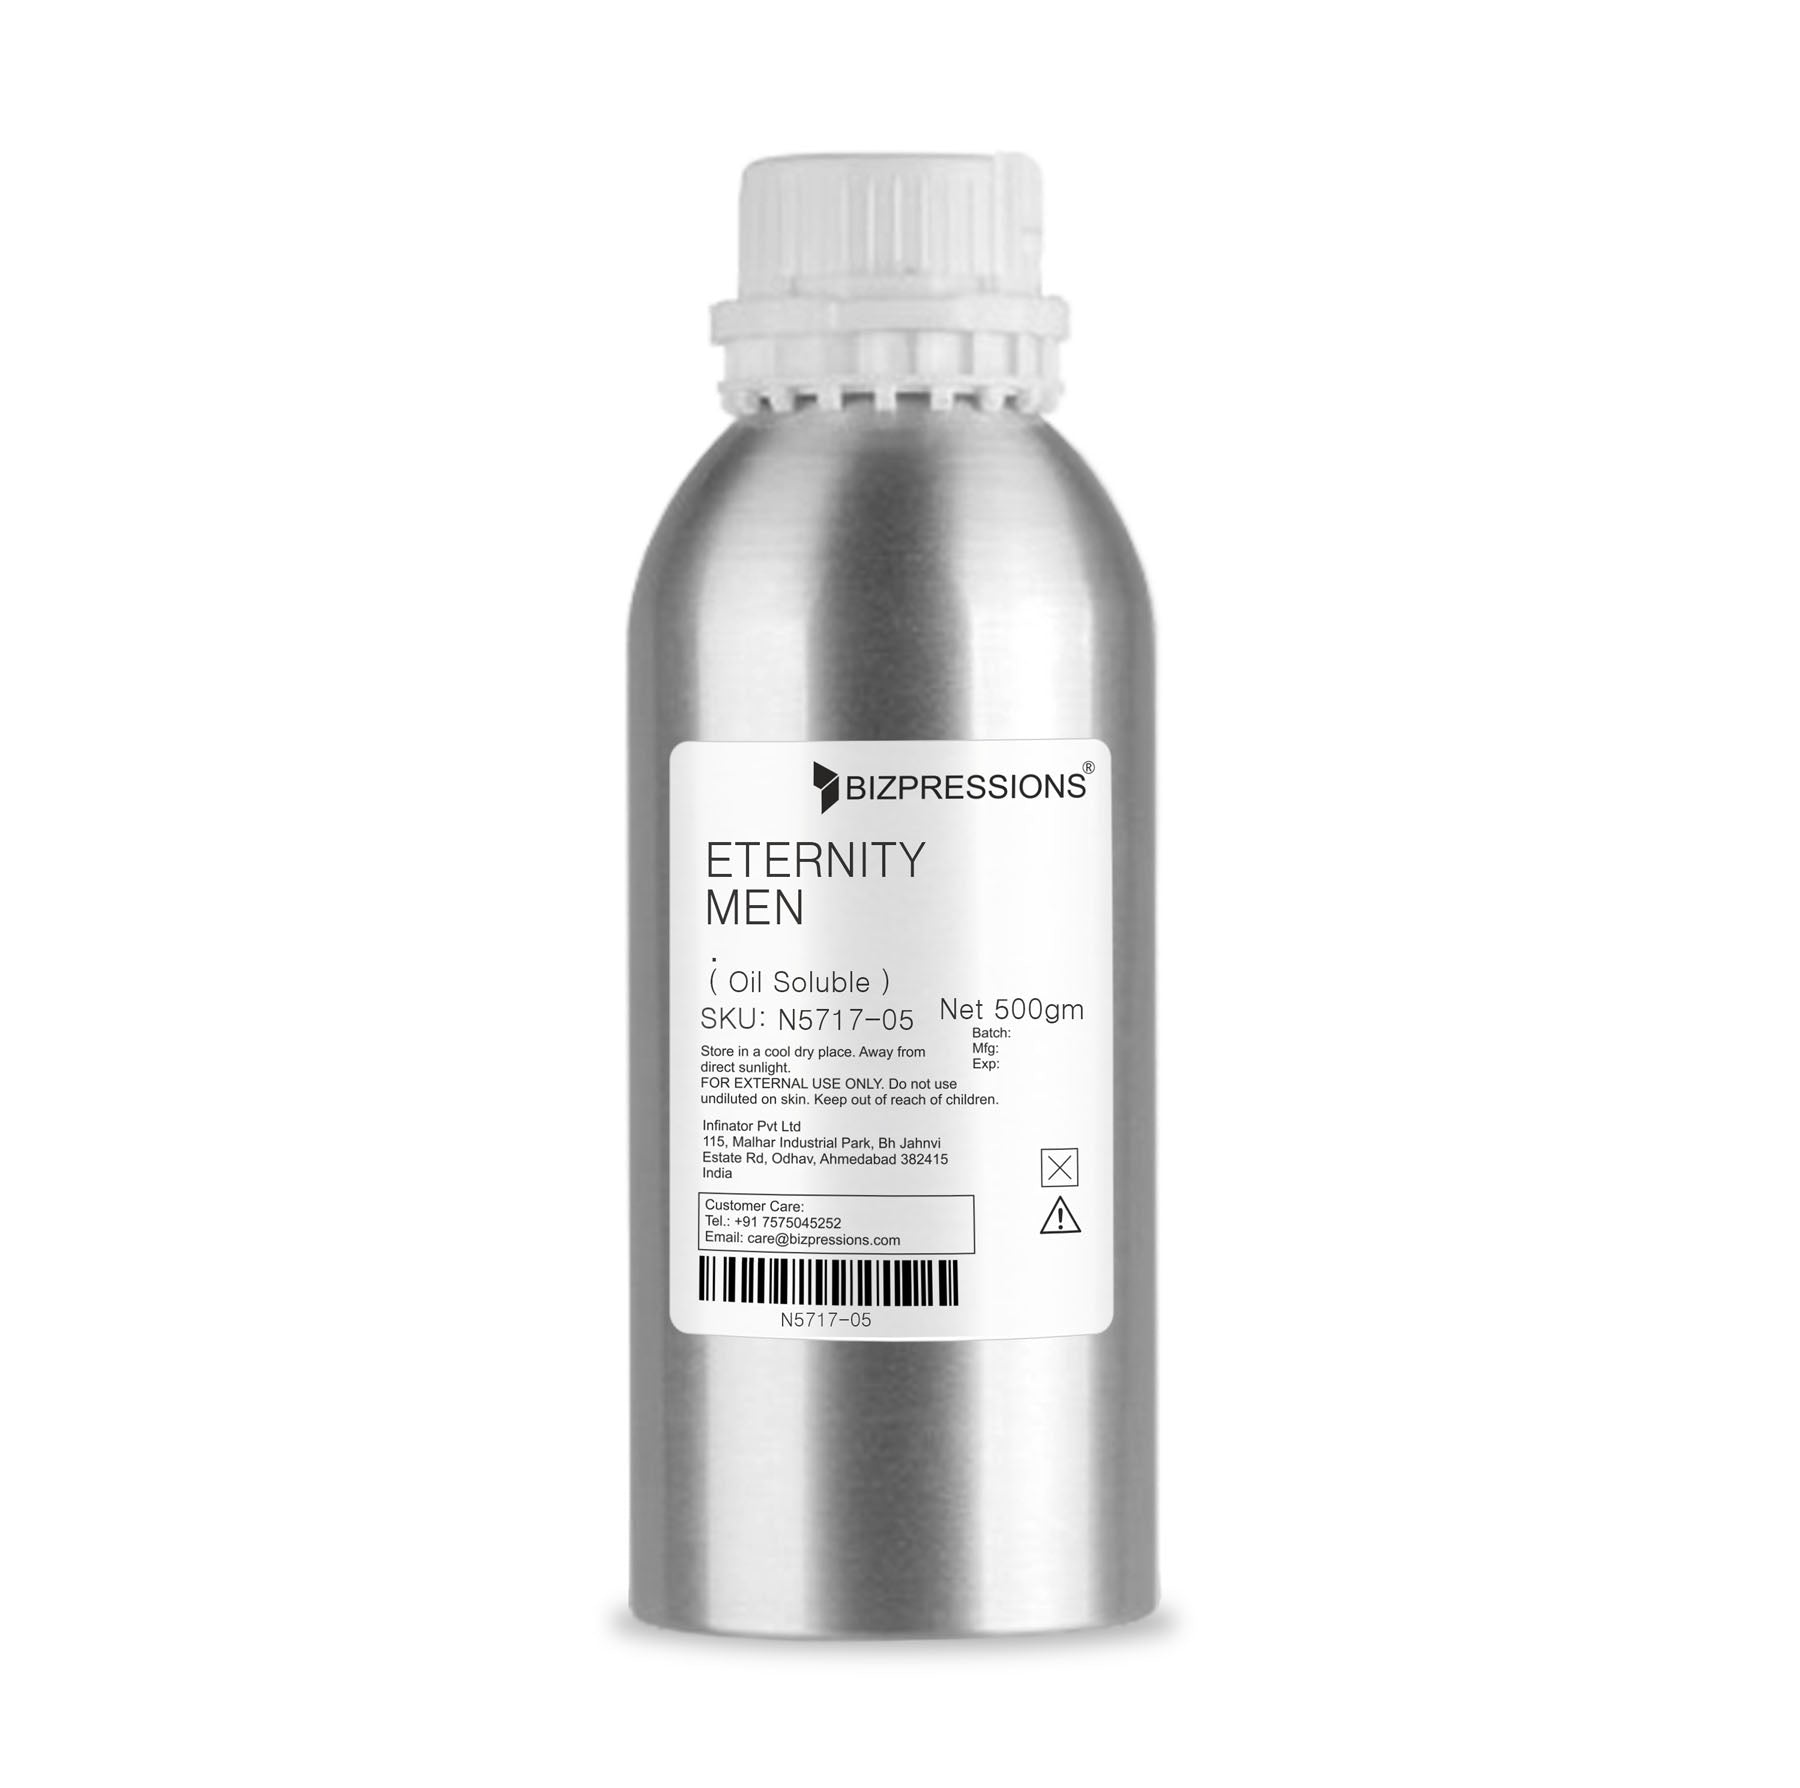 ETERNITY MEN - Fragrance ( Oil Soluble ) - 500 gm